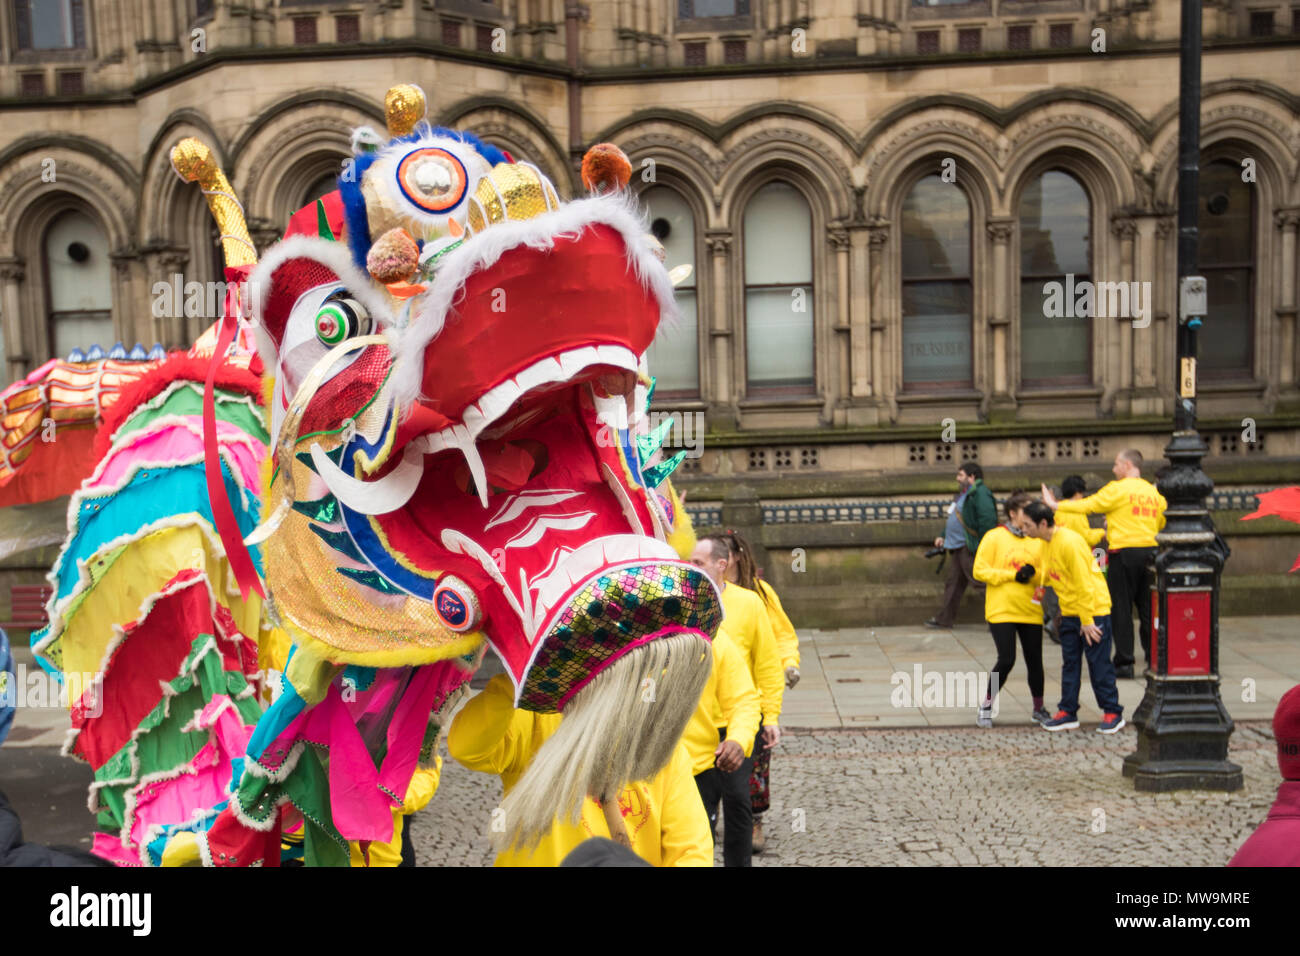 Chinesisches Neues Jahr Drachen, wie es durch die Straßen für die Feierlichkeiten zum Chinesischen Neuen Jahr in Manchester, Großbritannien getanzt Stockfoto